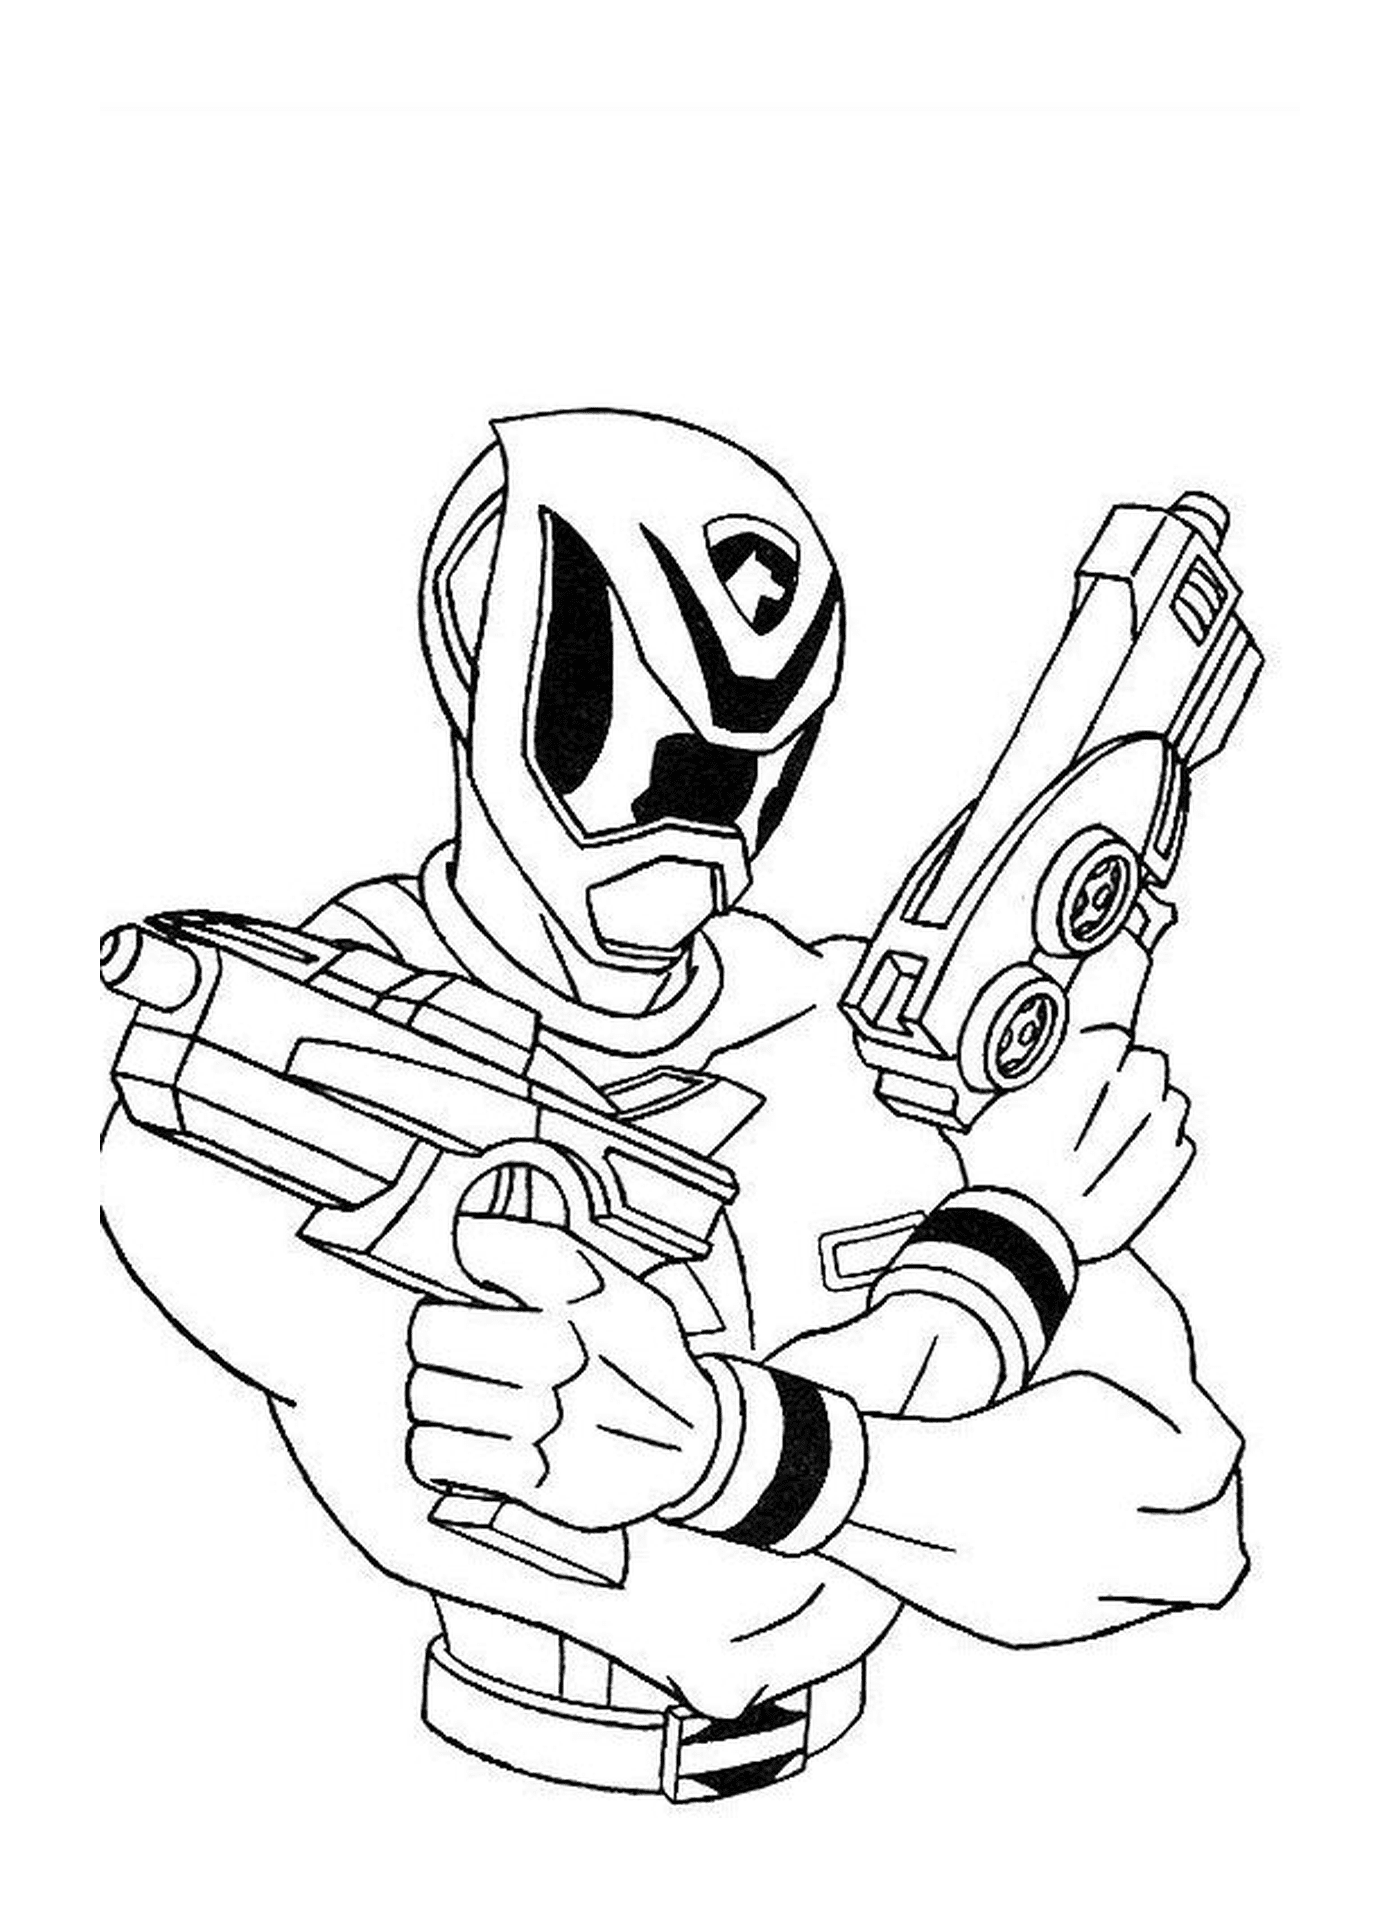  Presença de um Power Ranger com rifles 